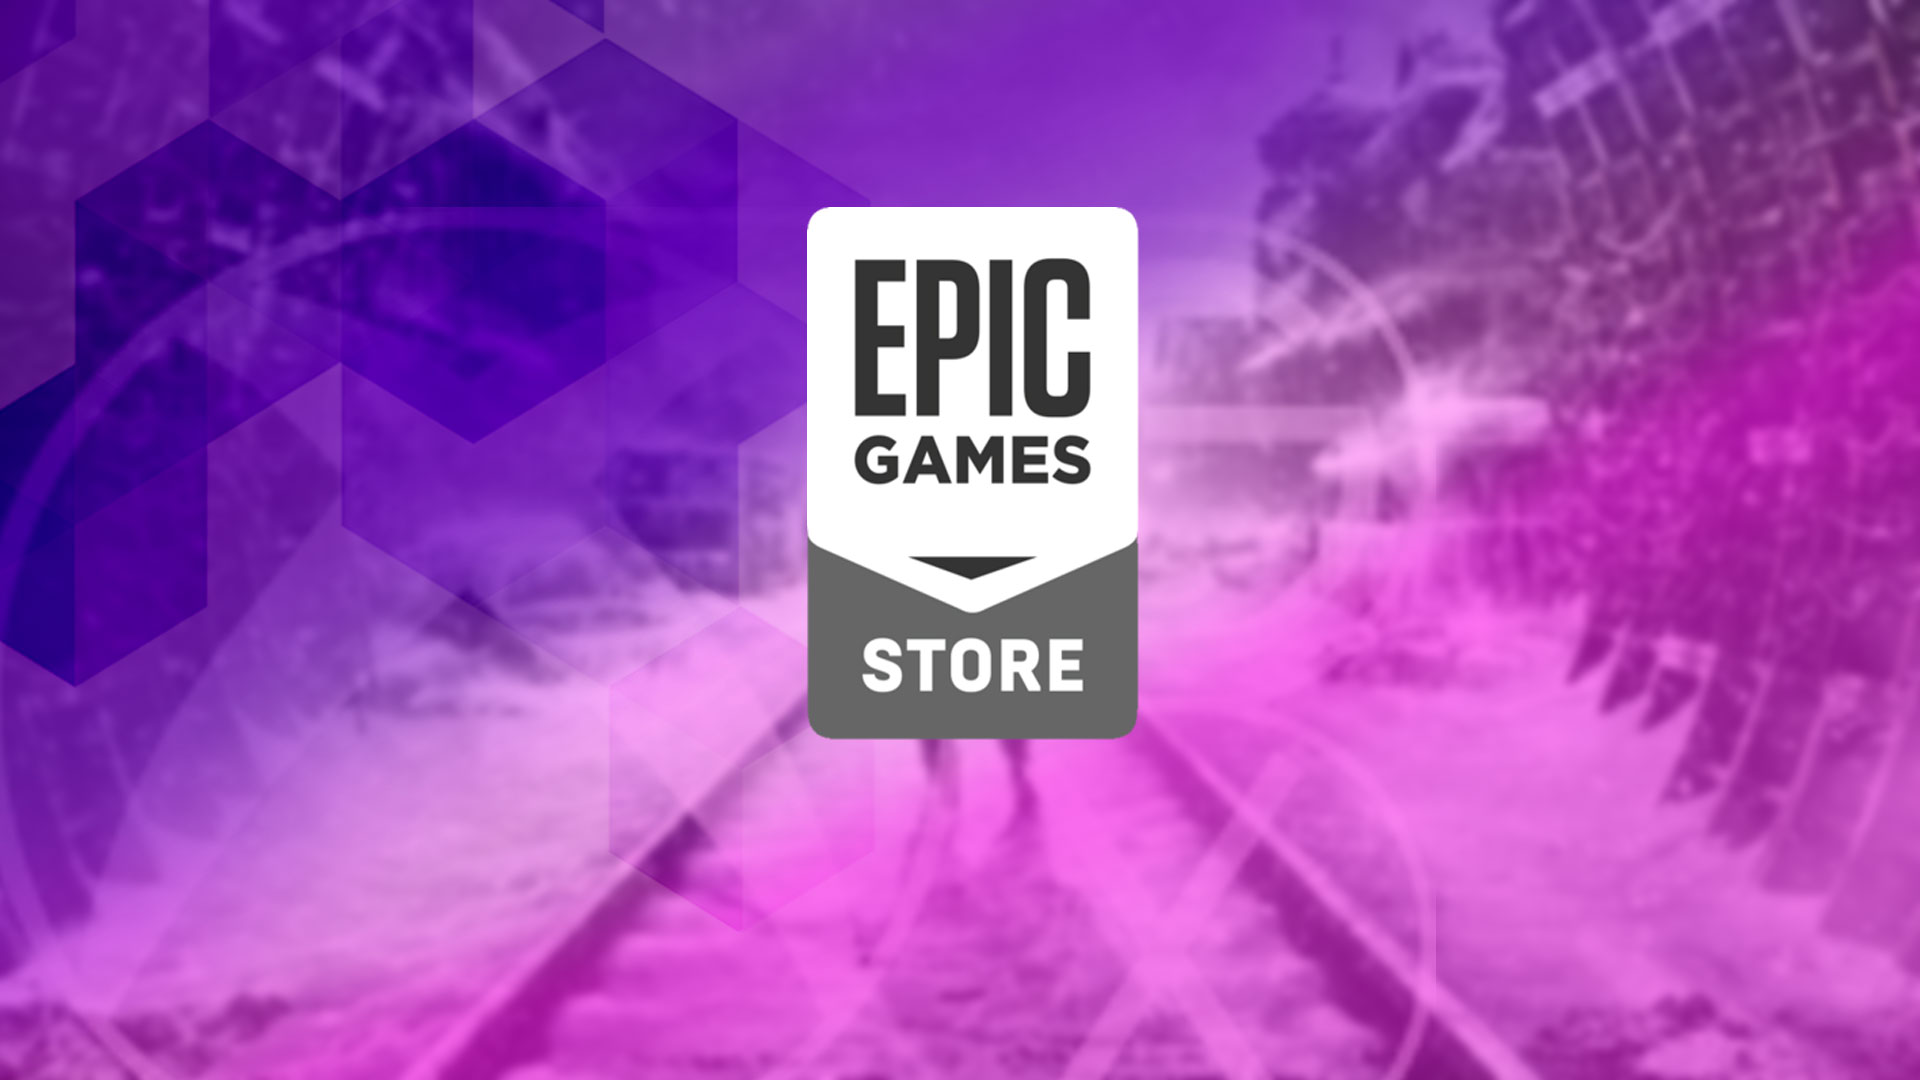 فروشگاه اپیک گیمز حالا ۱۰۰ میلیون کاربر دارد - ویجیاتو